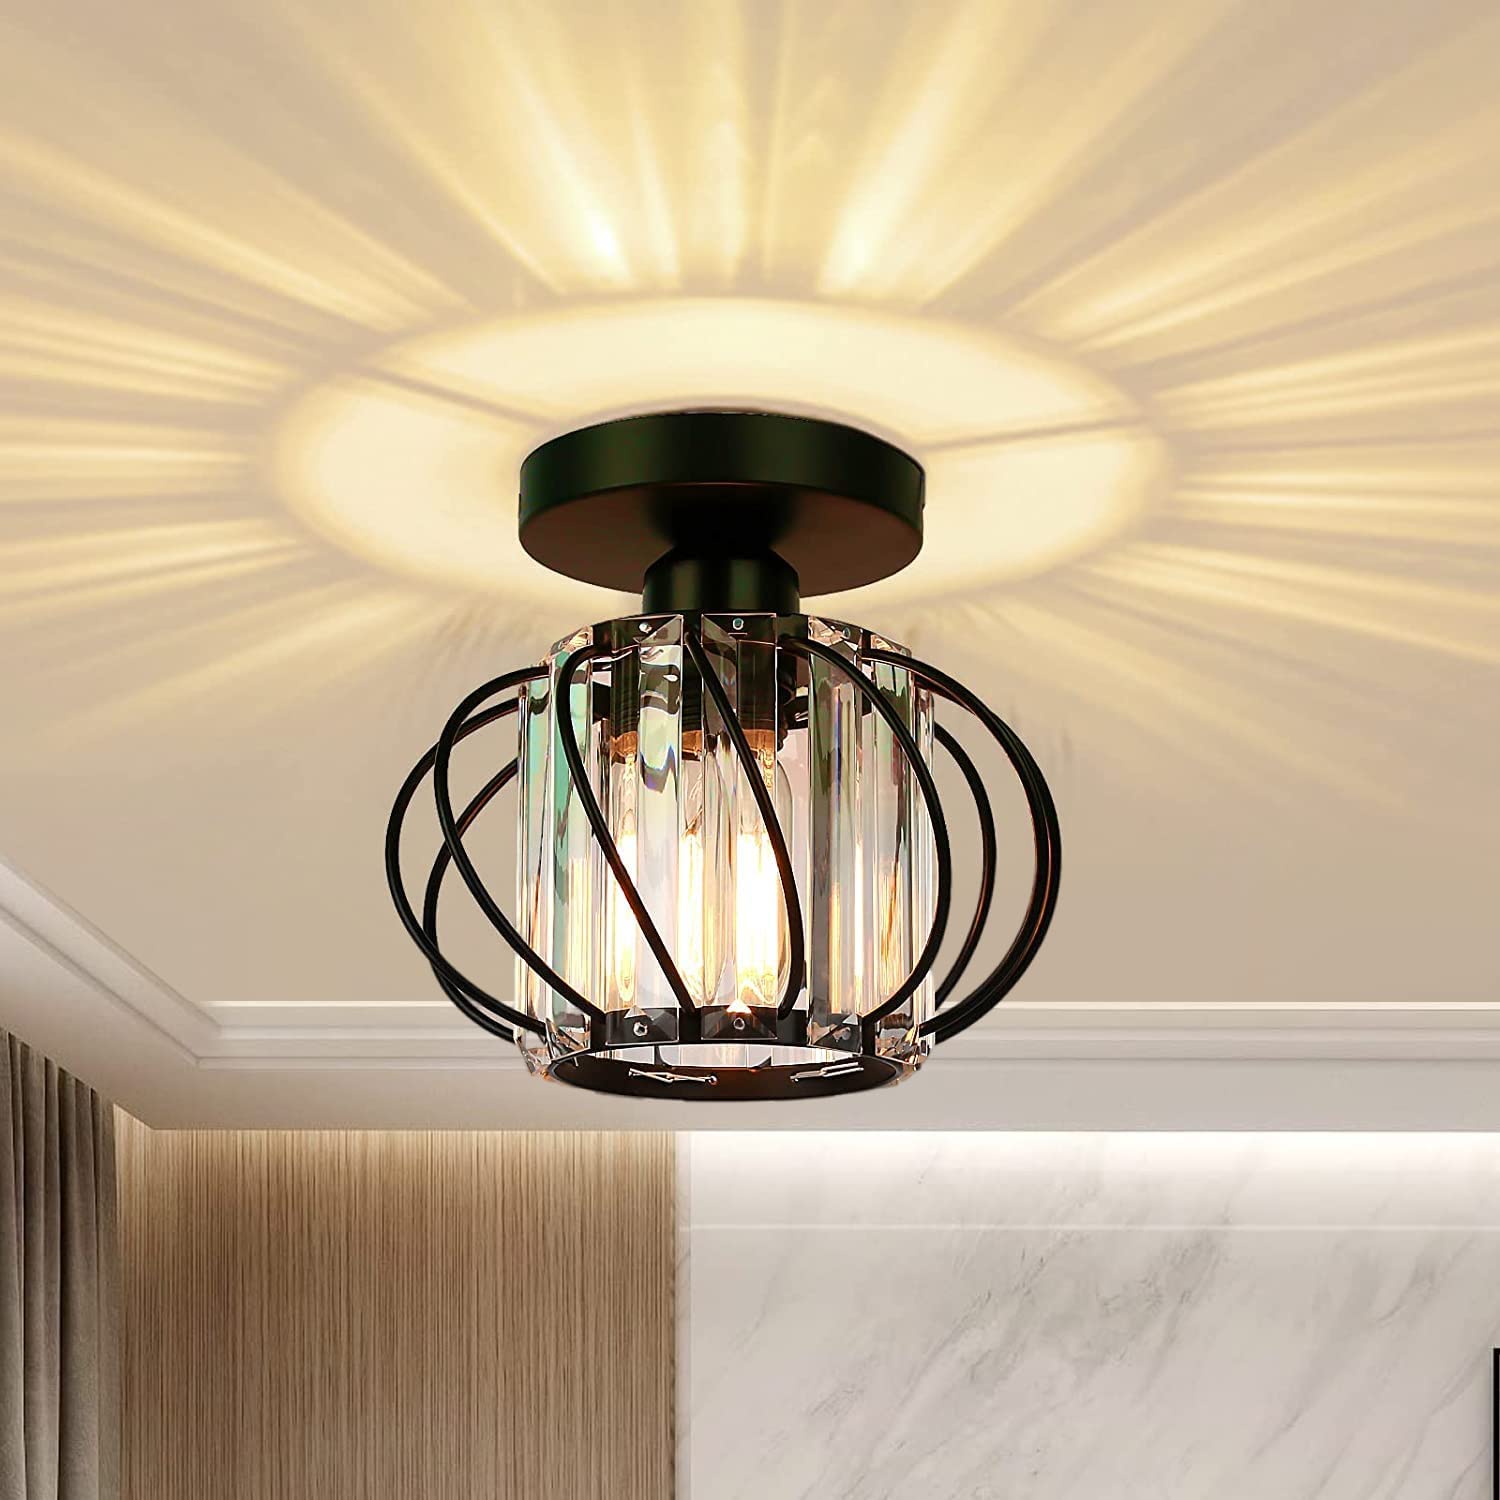 لامپ سقفی Modern Crystal Ceiling Light Fixture - ارسال ۱۰ الی ۱۵ روز کاری